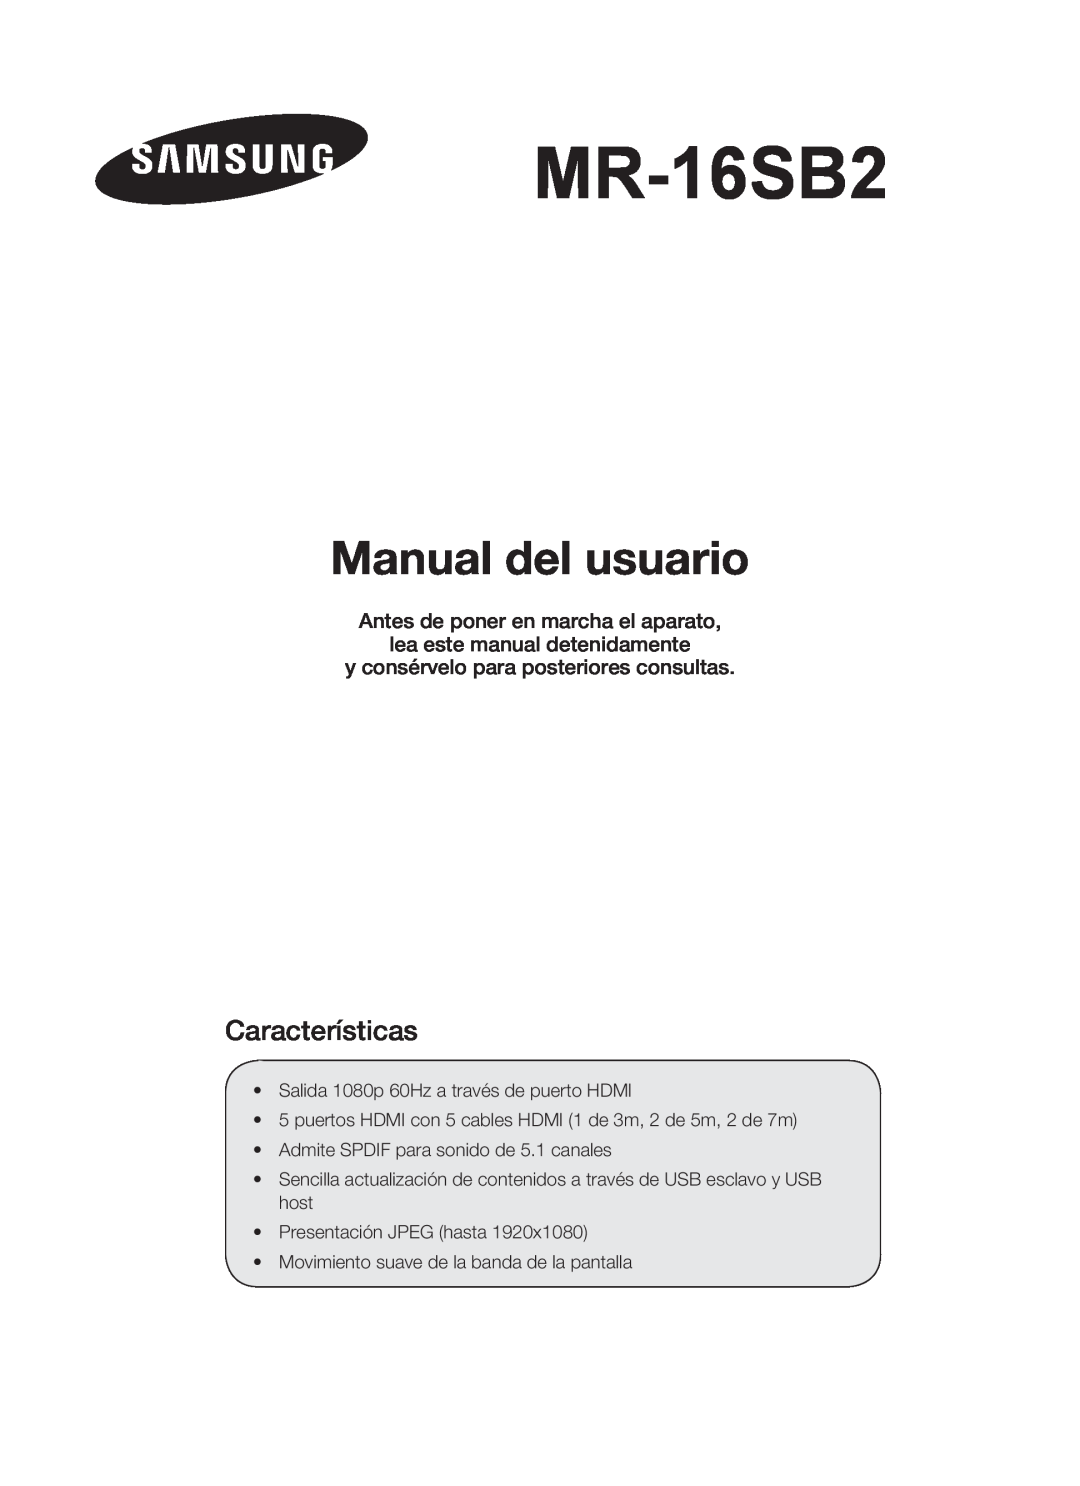 Samsung MR-16SB2 Manual del usuario, Características, Antes de poner en marcha el aparato lea este manual detenidamente 